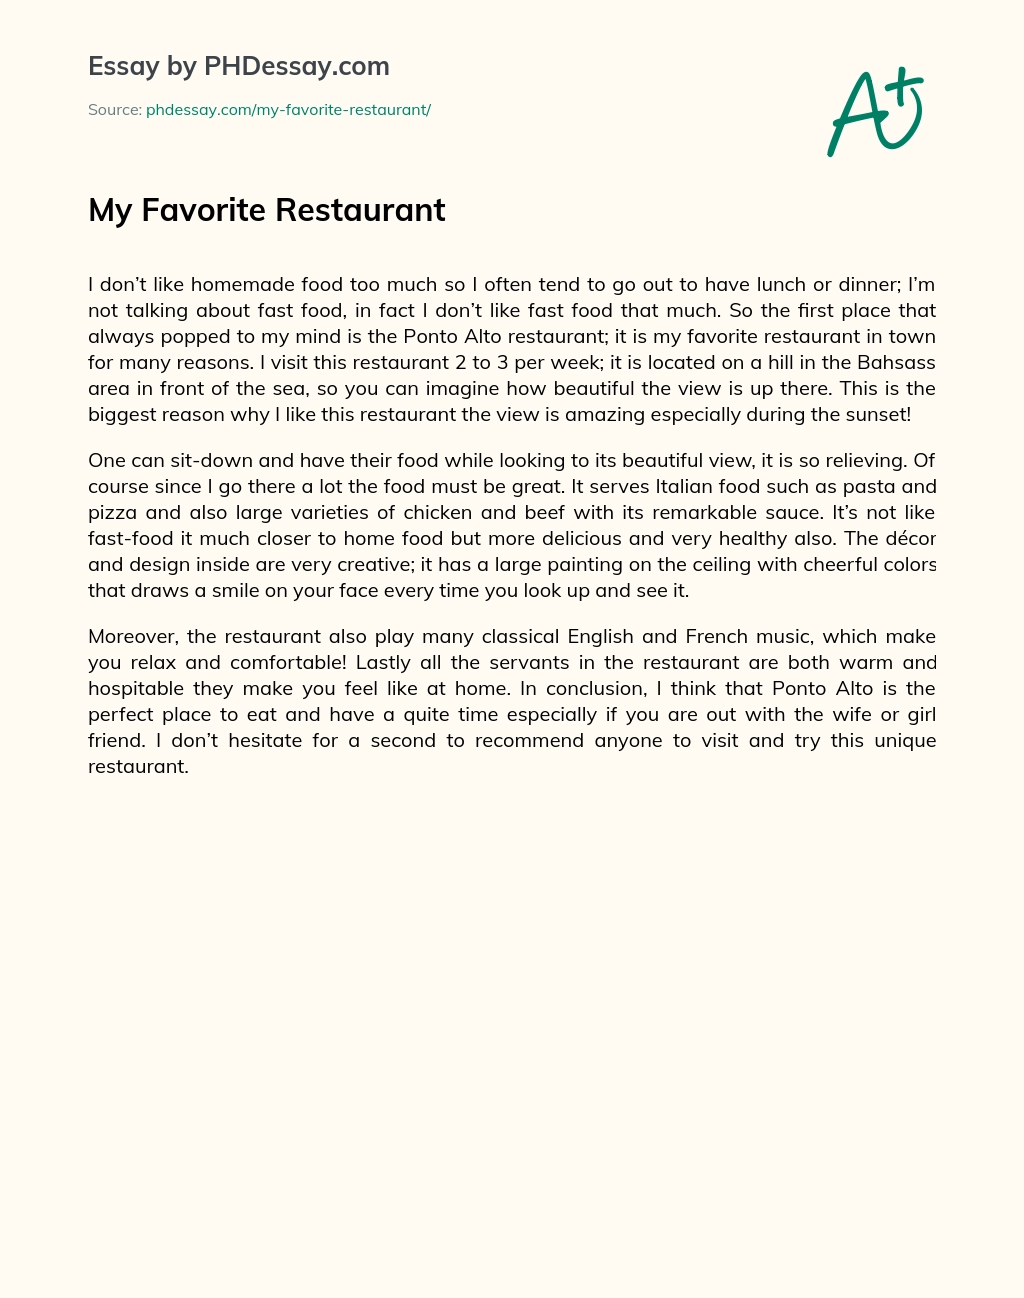 essay about my favorite restaurant